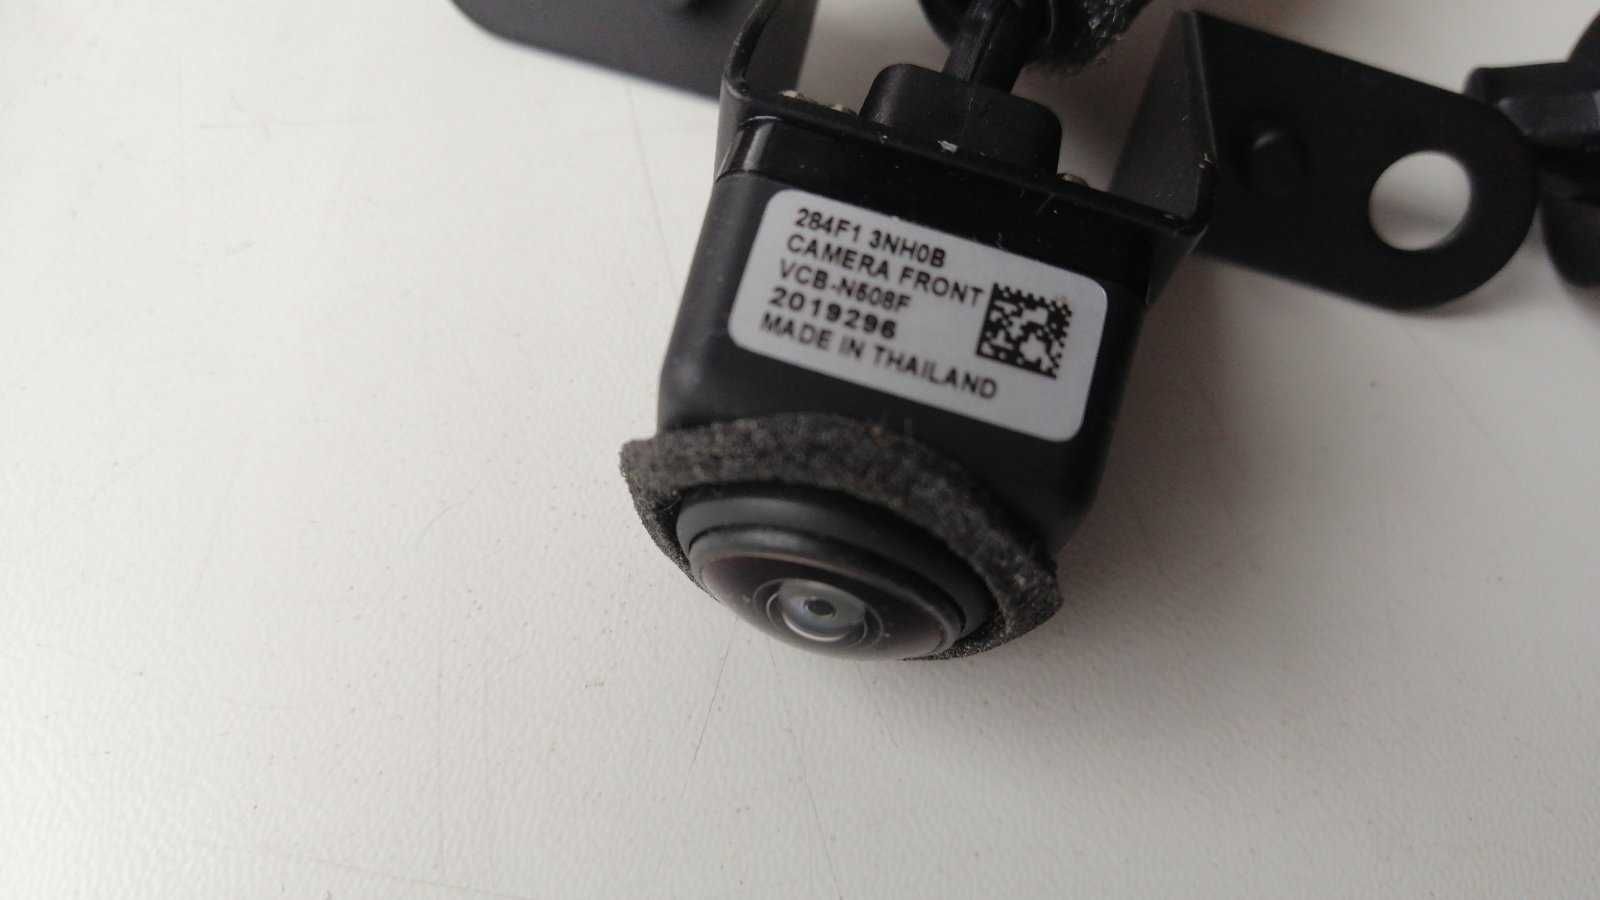 камера передняя 284F13NH0B nissan leaf 13-17 оригинал VCB-N508F